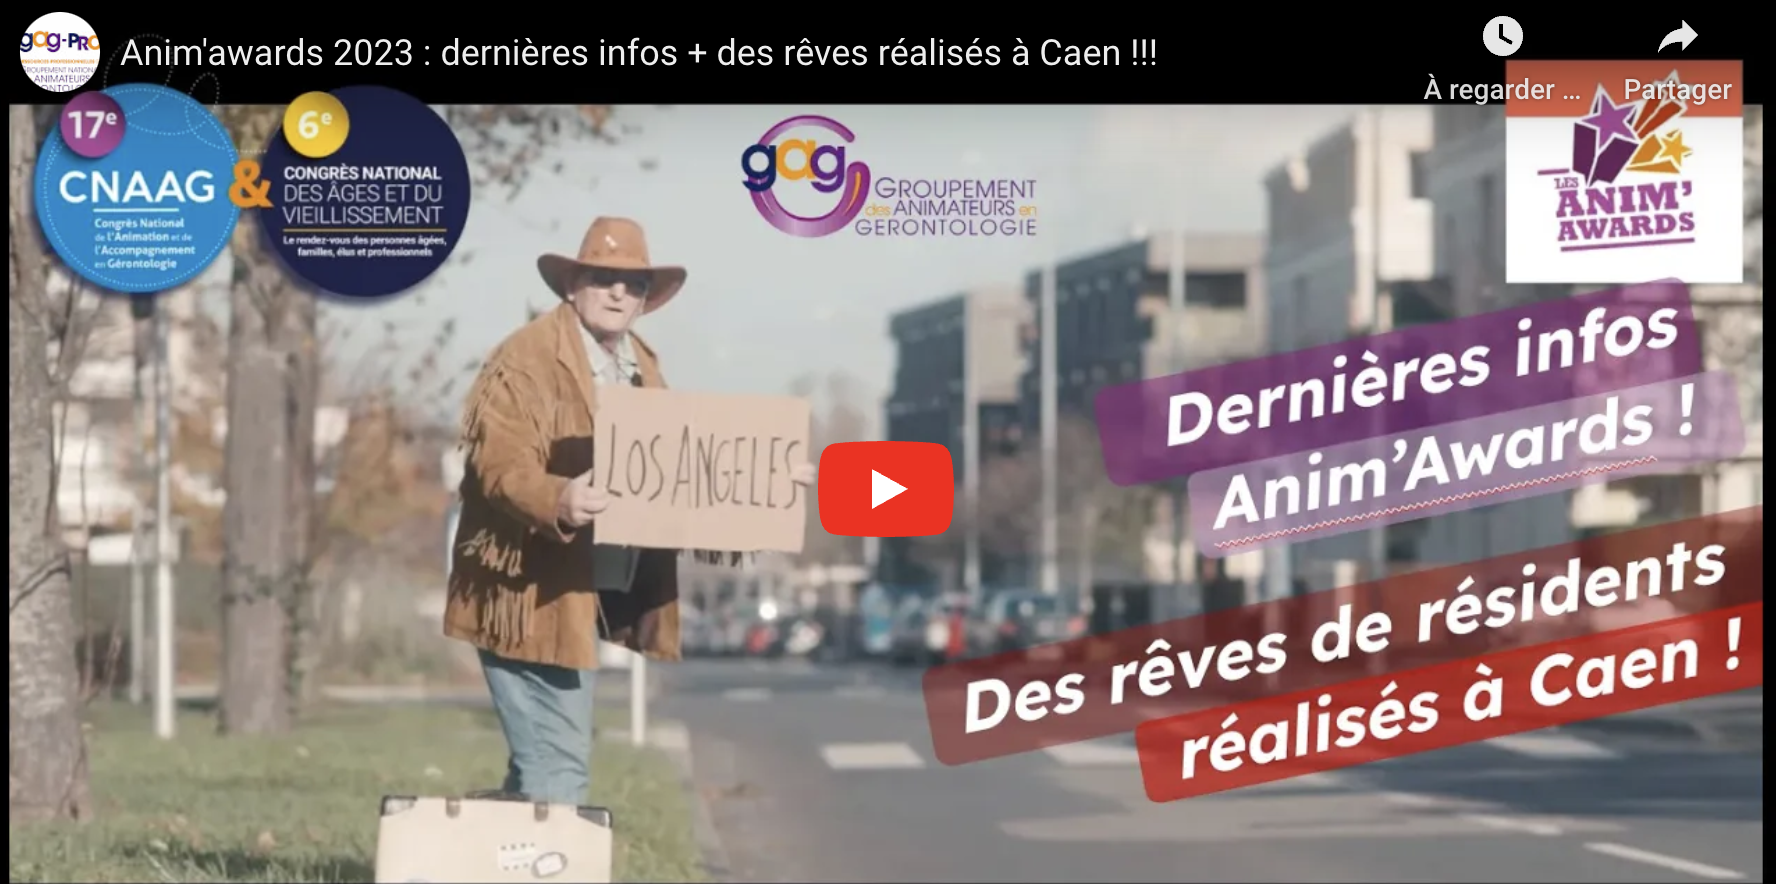 Infos Anim'awards + des rêves de résidents réalisés à Caen !